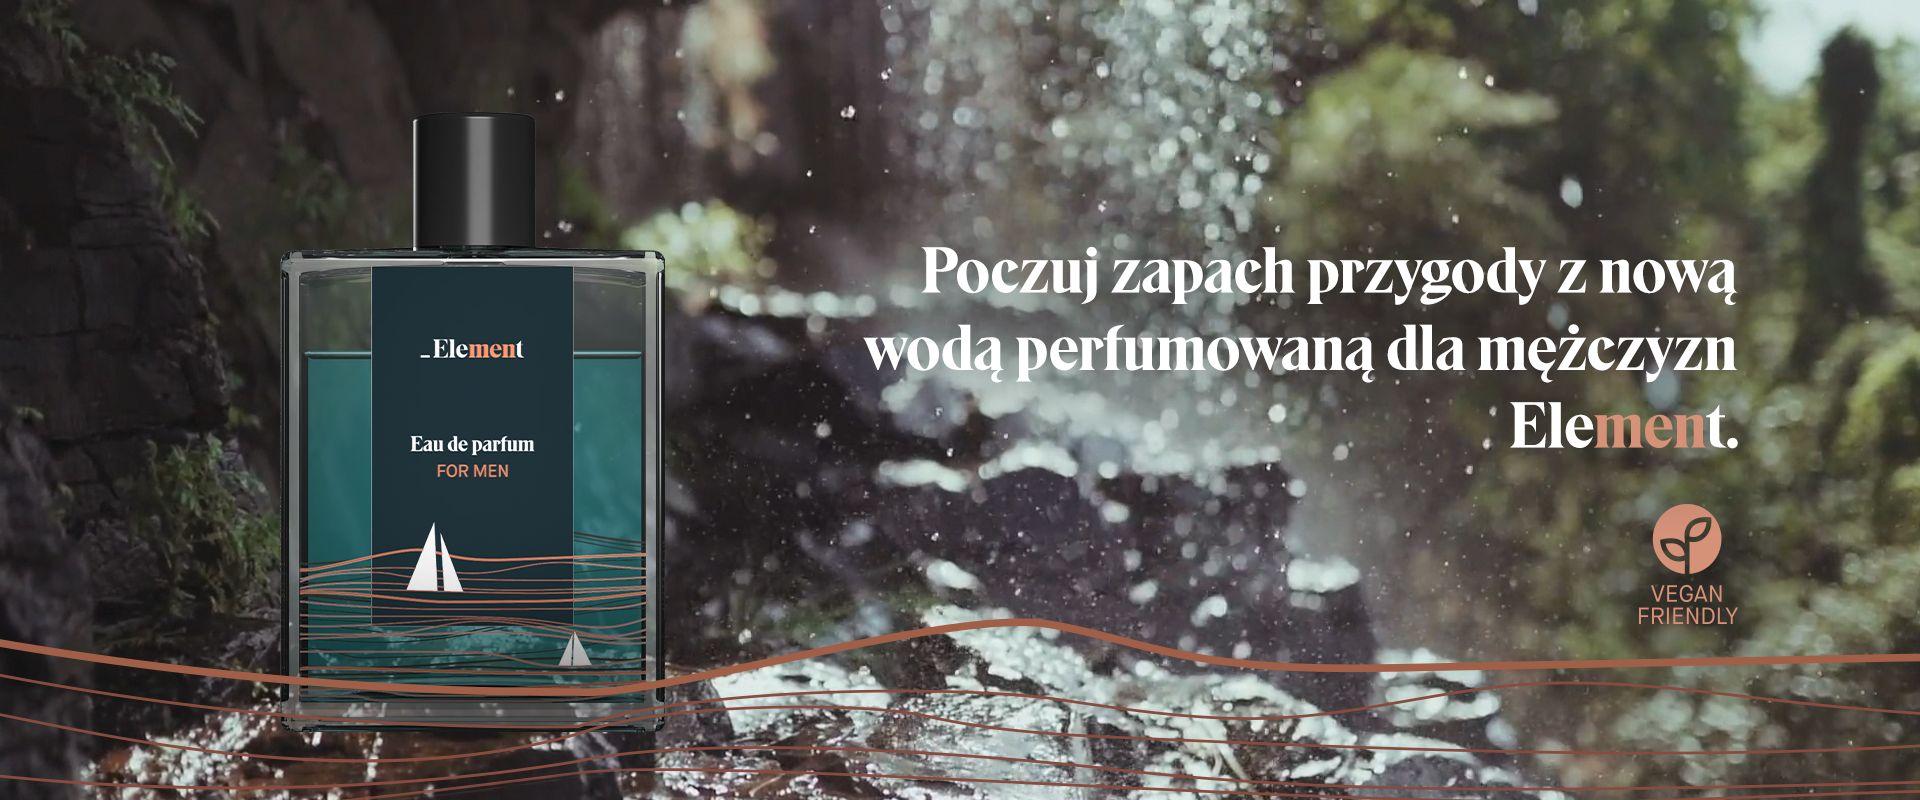 Polska marka _Element debiutuje z perfumami dla mężczyzn